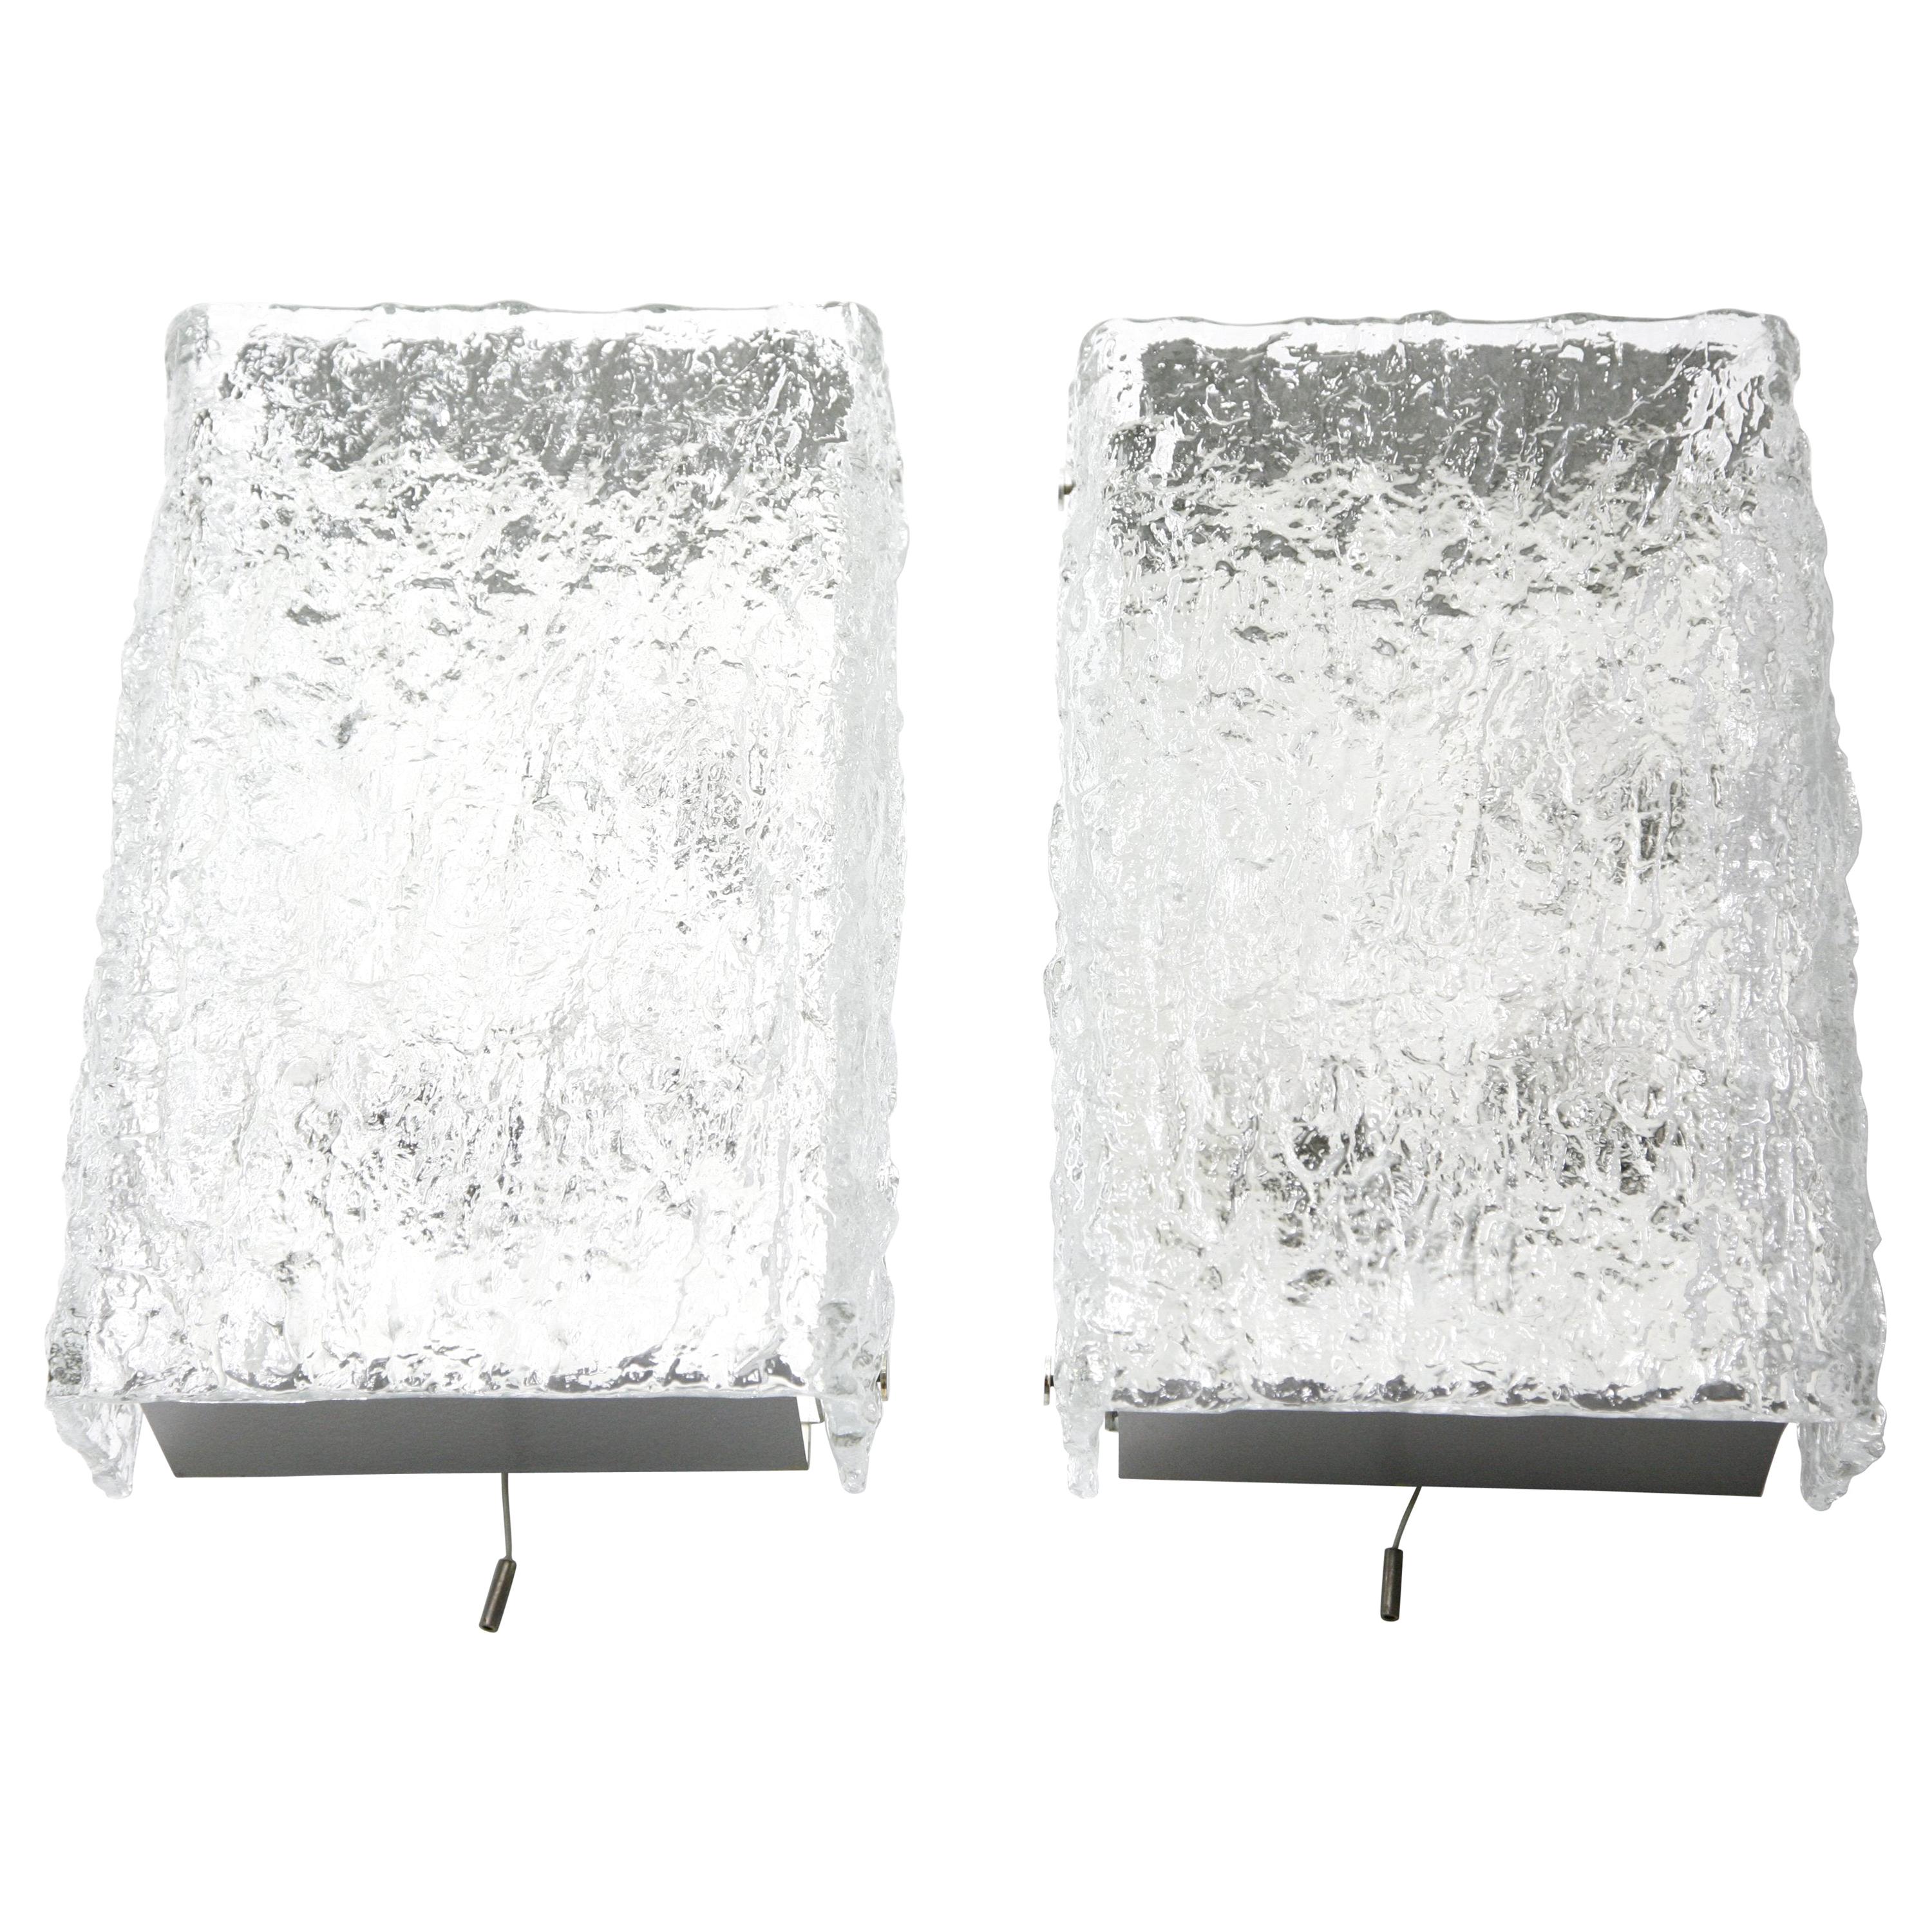 Paar Wandleuchten von Kalmar aus den 1960er Jahren, weiß emaillierte Rückwand, obere und untere Platte aus mattem Nickel, ein Stück dickes, eisig wirkendes, gebogenes Kristall mit einer wellenförmigen Struktur auf der äußeren Glasfläche, Glasschirm